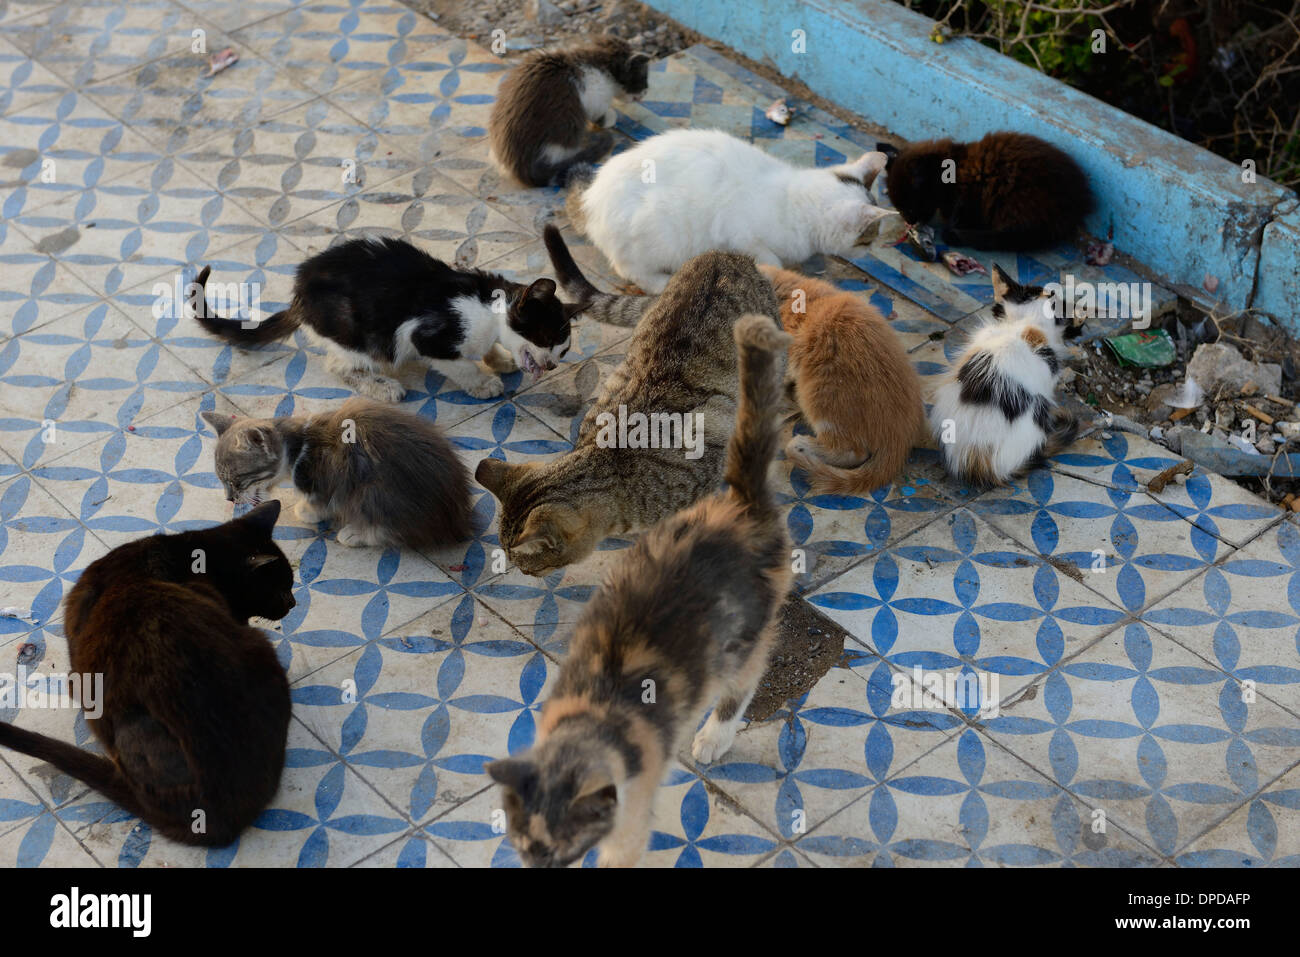 Marocco Essaouira, abbandonati i gatti alimentazione Foto Stock